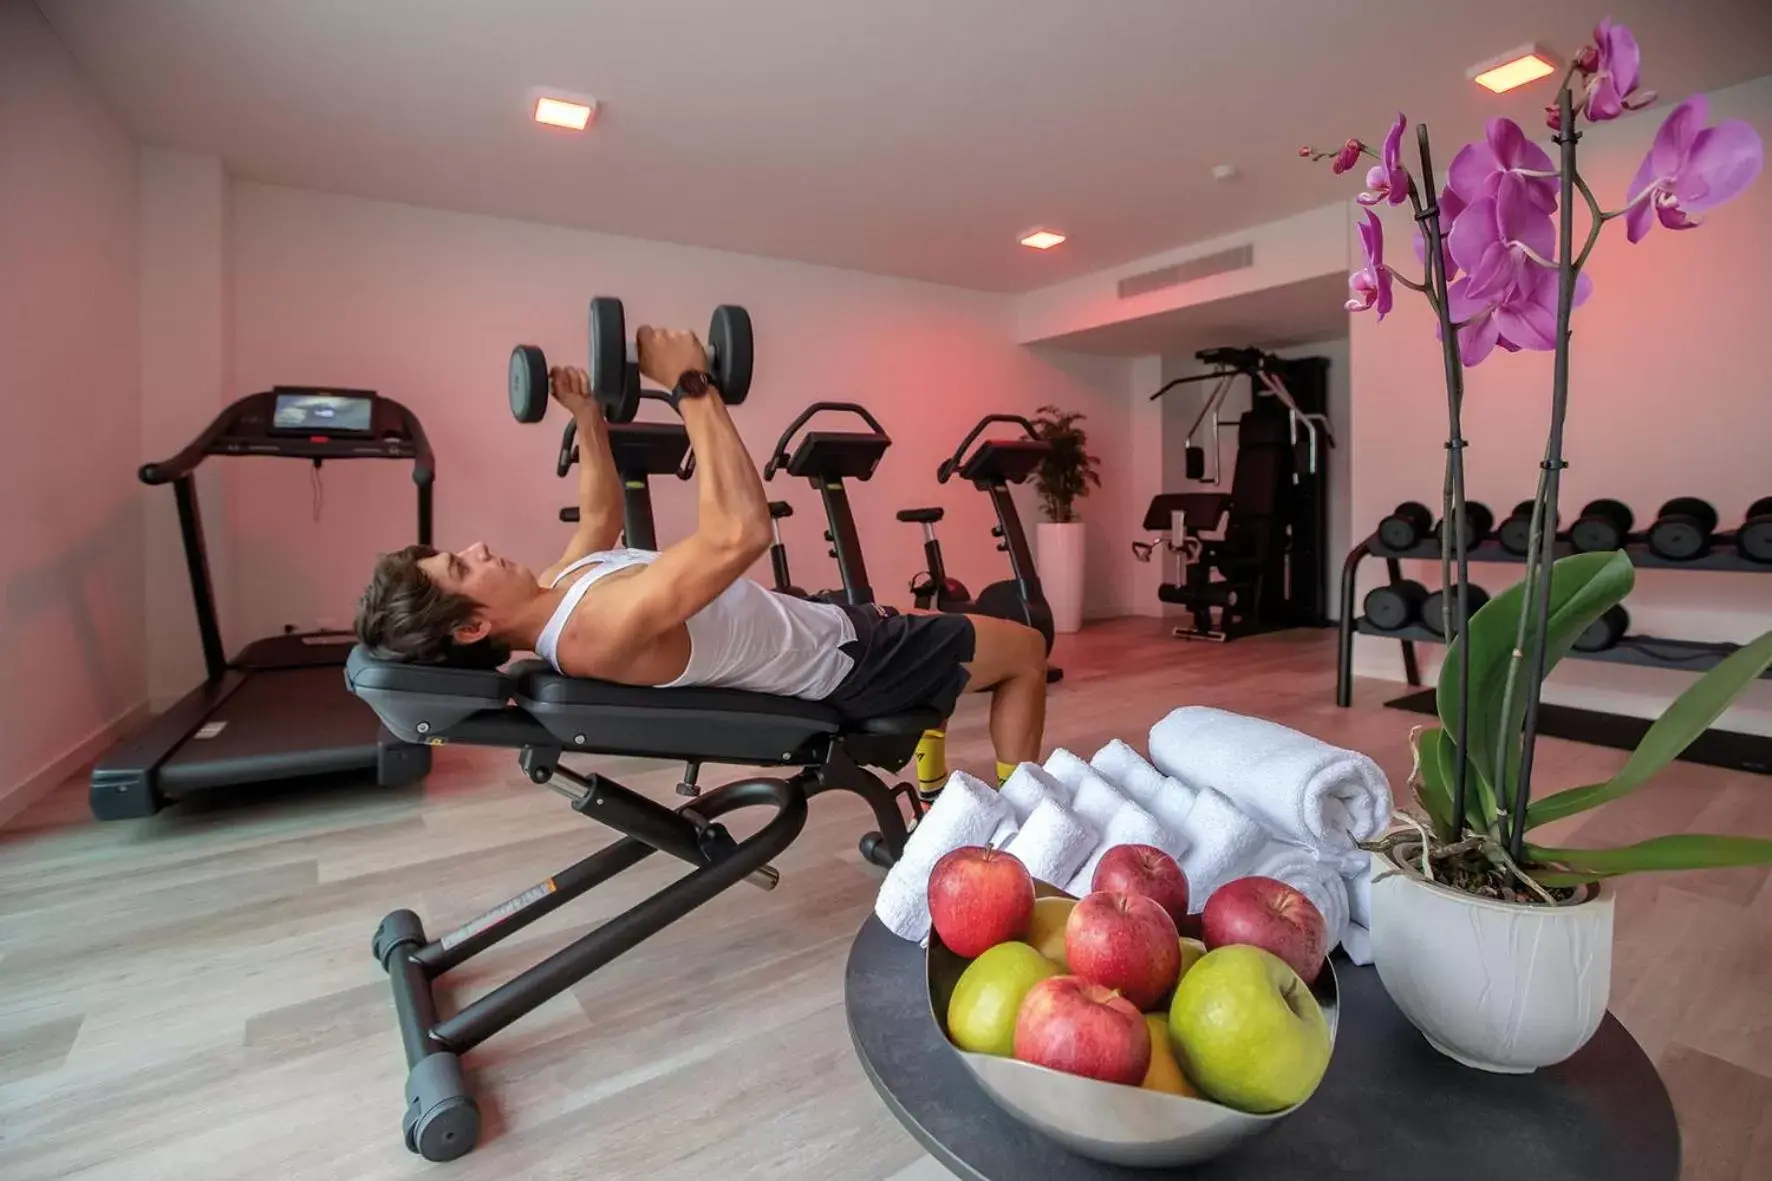 Fitness centre/facilities, Fitness Center/Facilities in Hotel Lago Maggiore - Welcome!